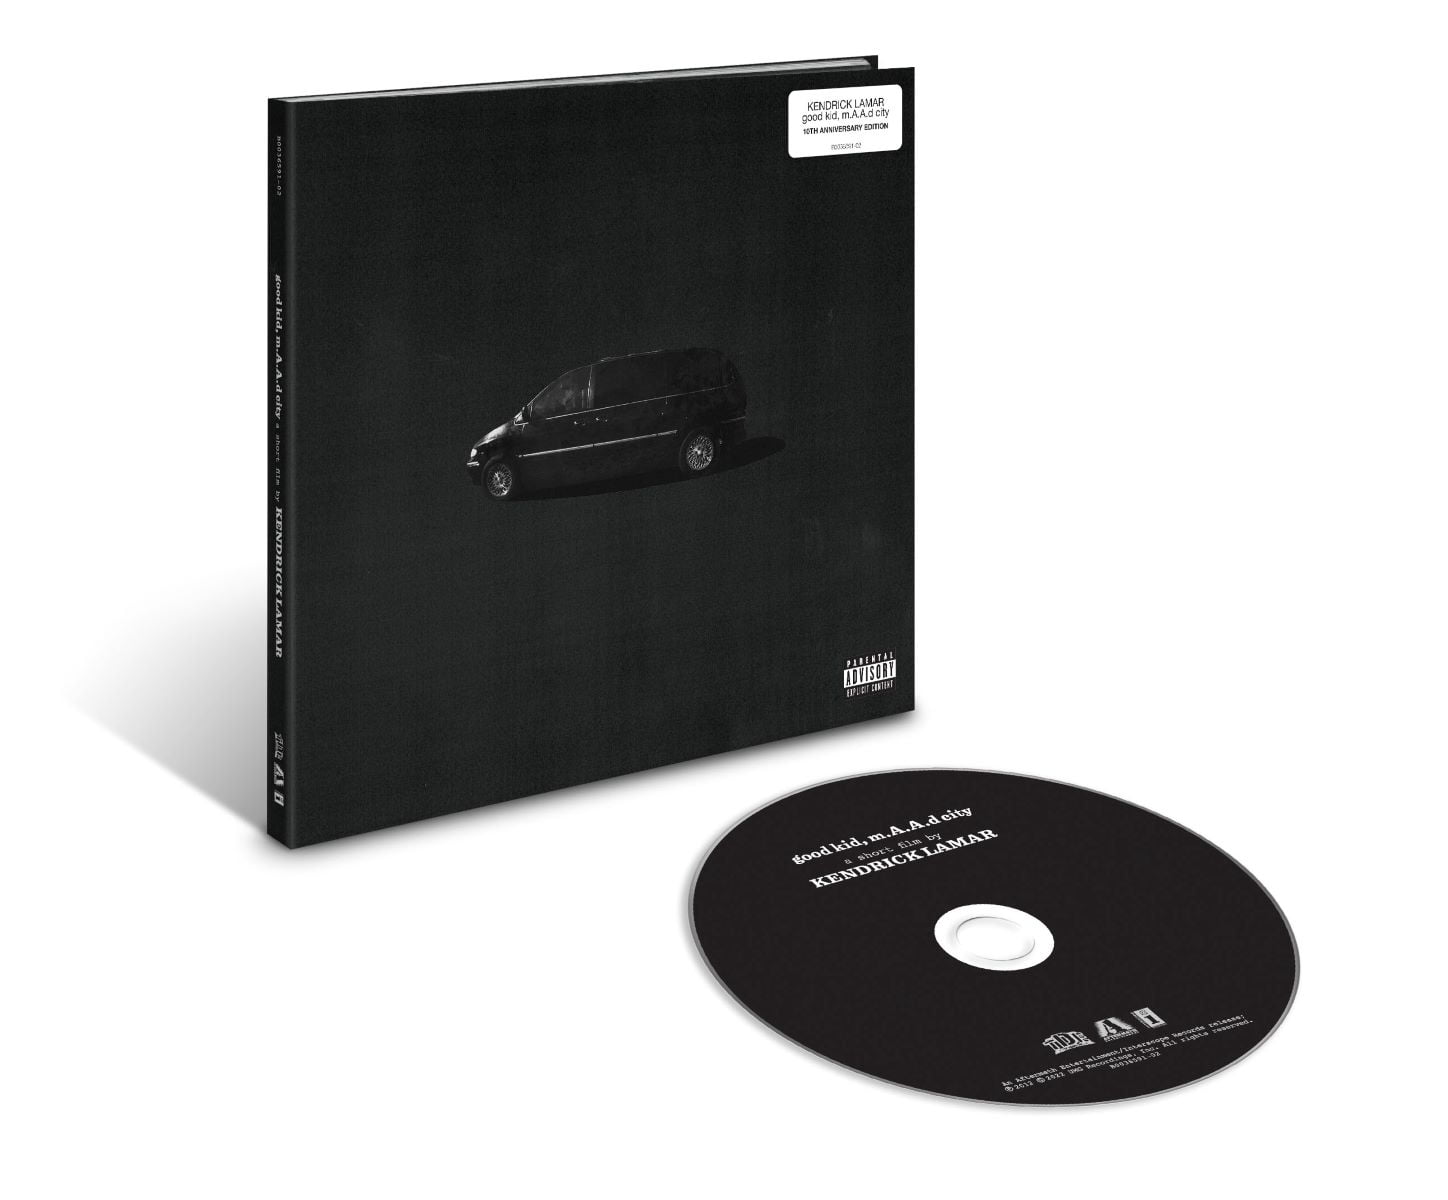 Glat Assassin uklar Kendrick Lamar - good Kid, M.A.A.D City (10th Anniversary Edition) - CD -  Walmart.com